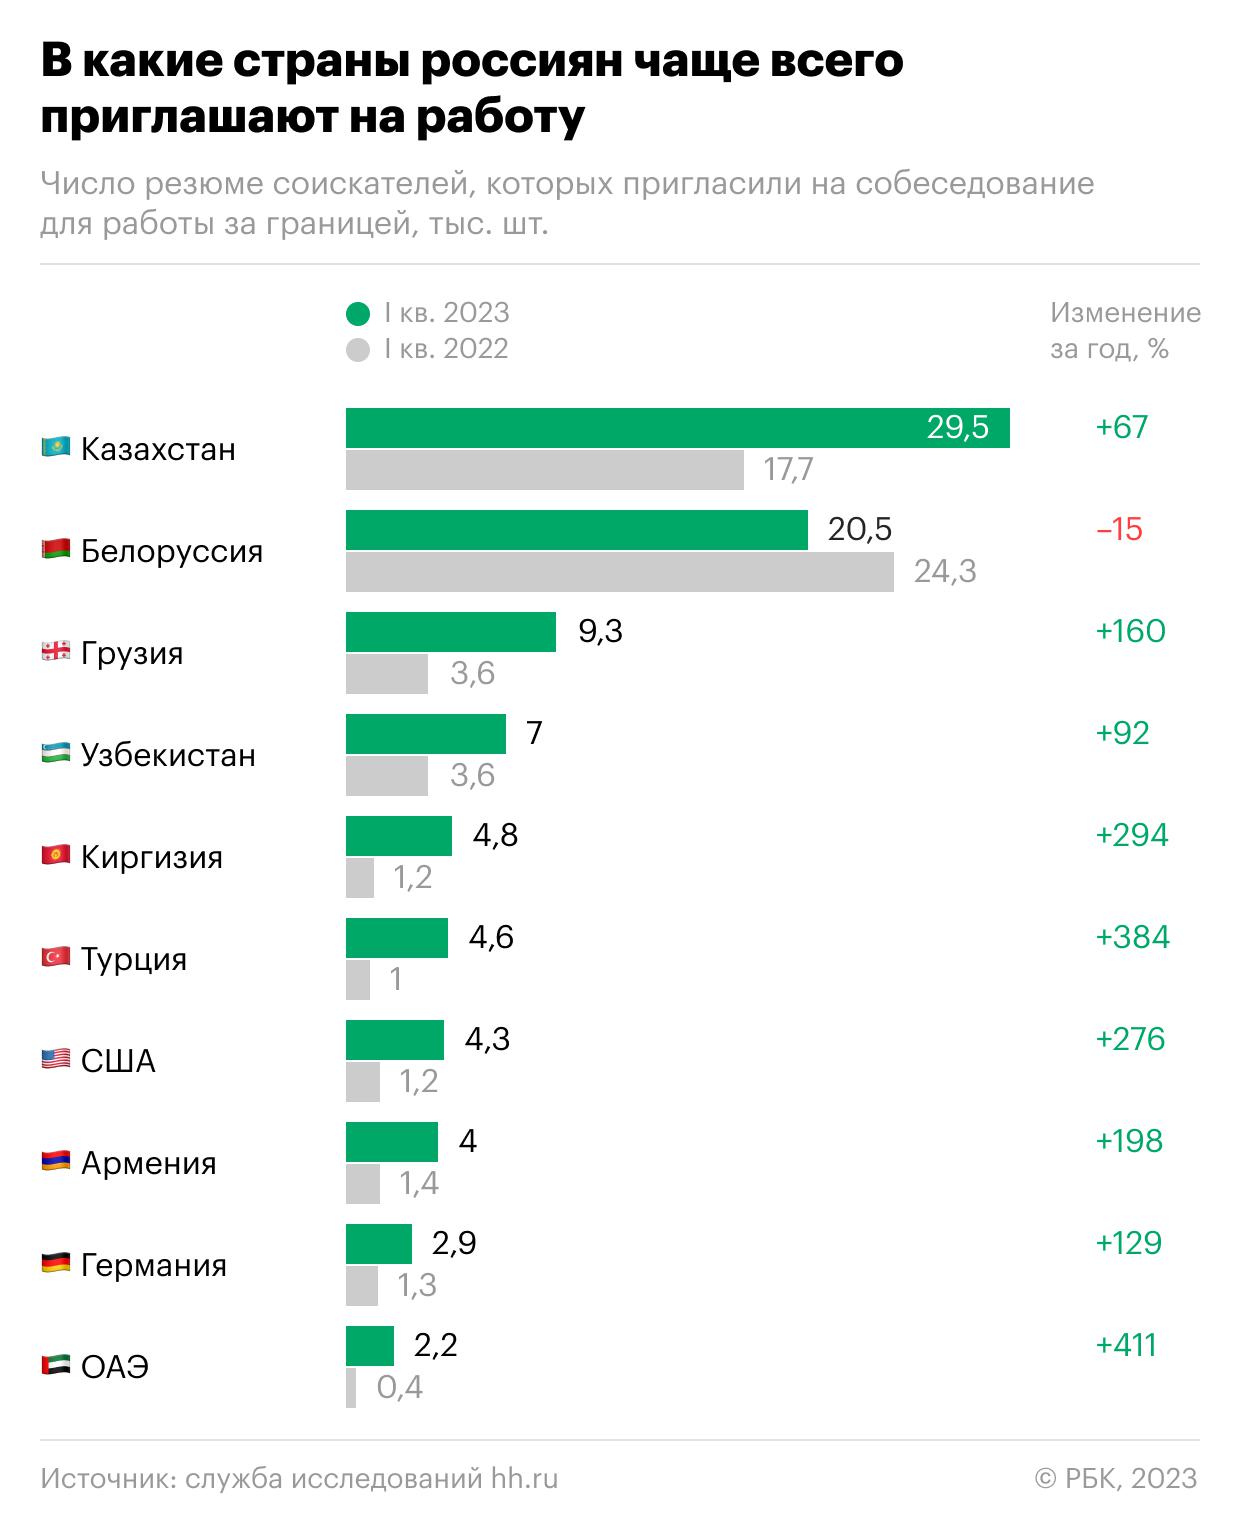 В какие страны стали чаще звать россиян работать. Инфографика